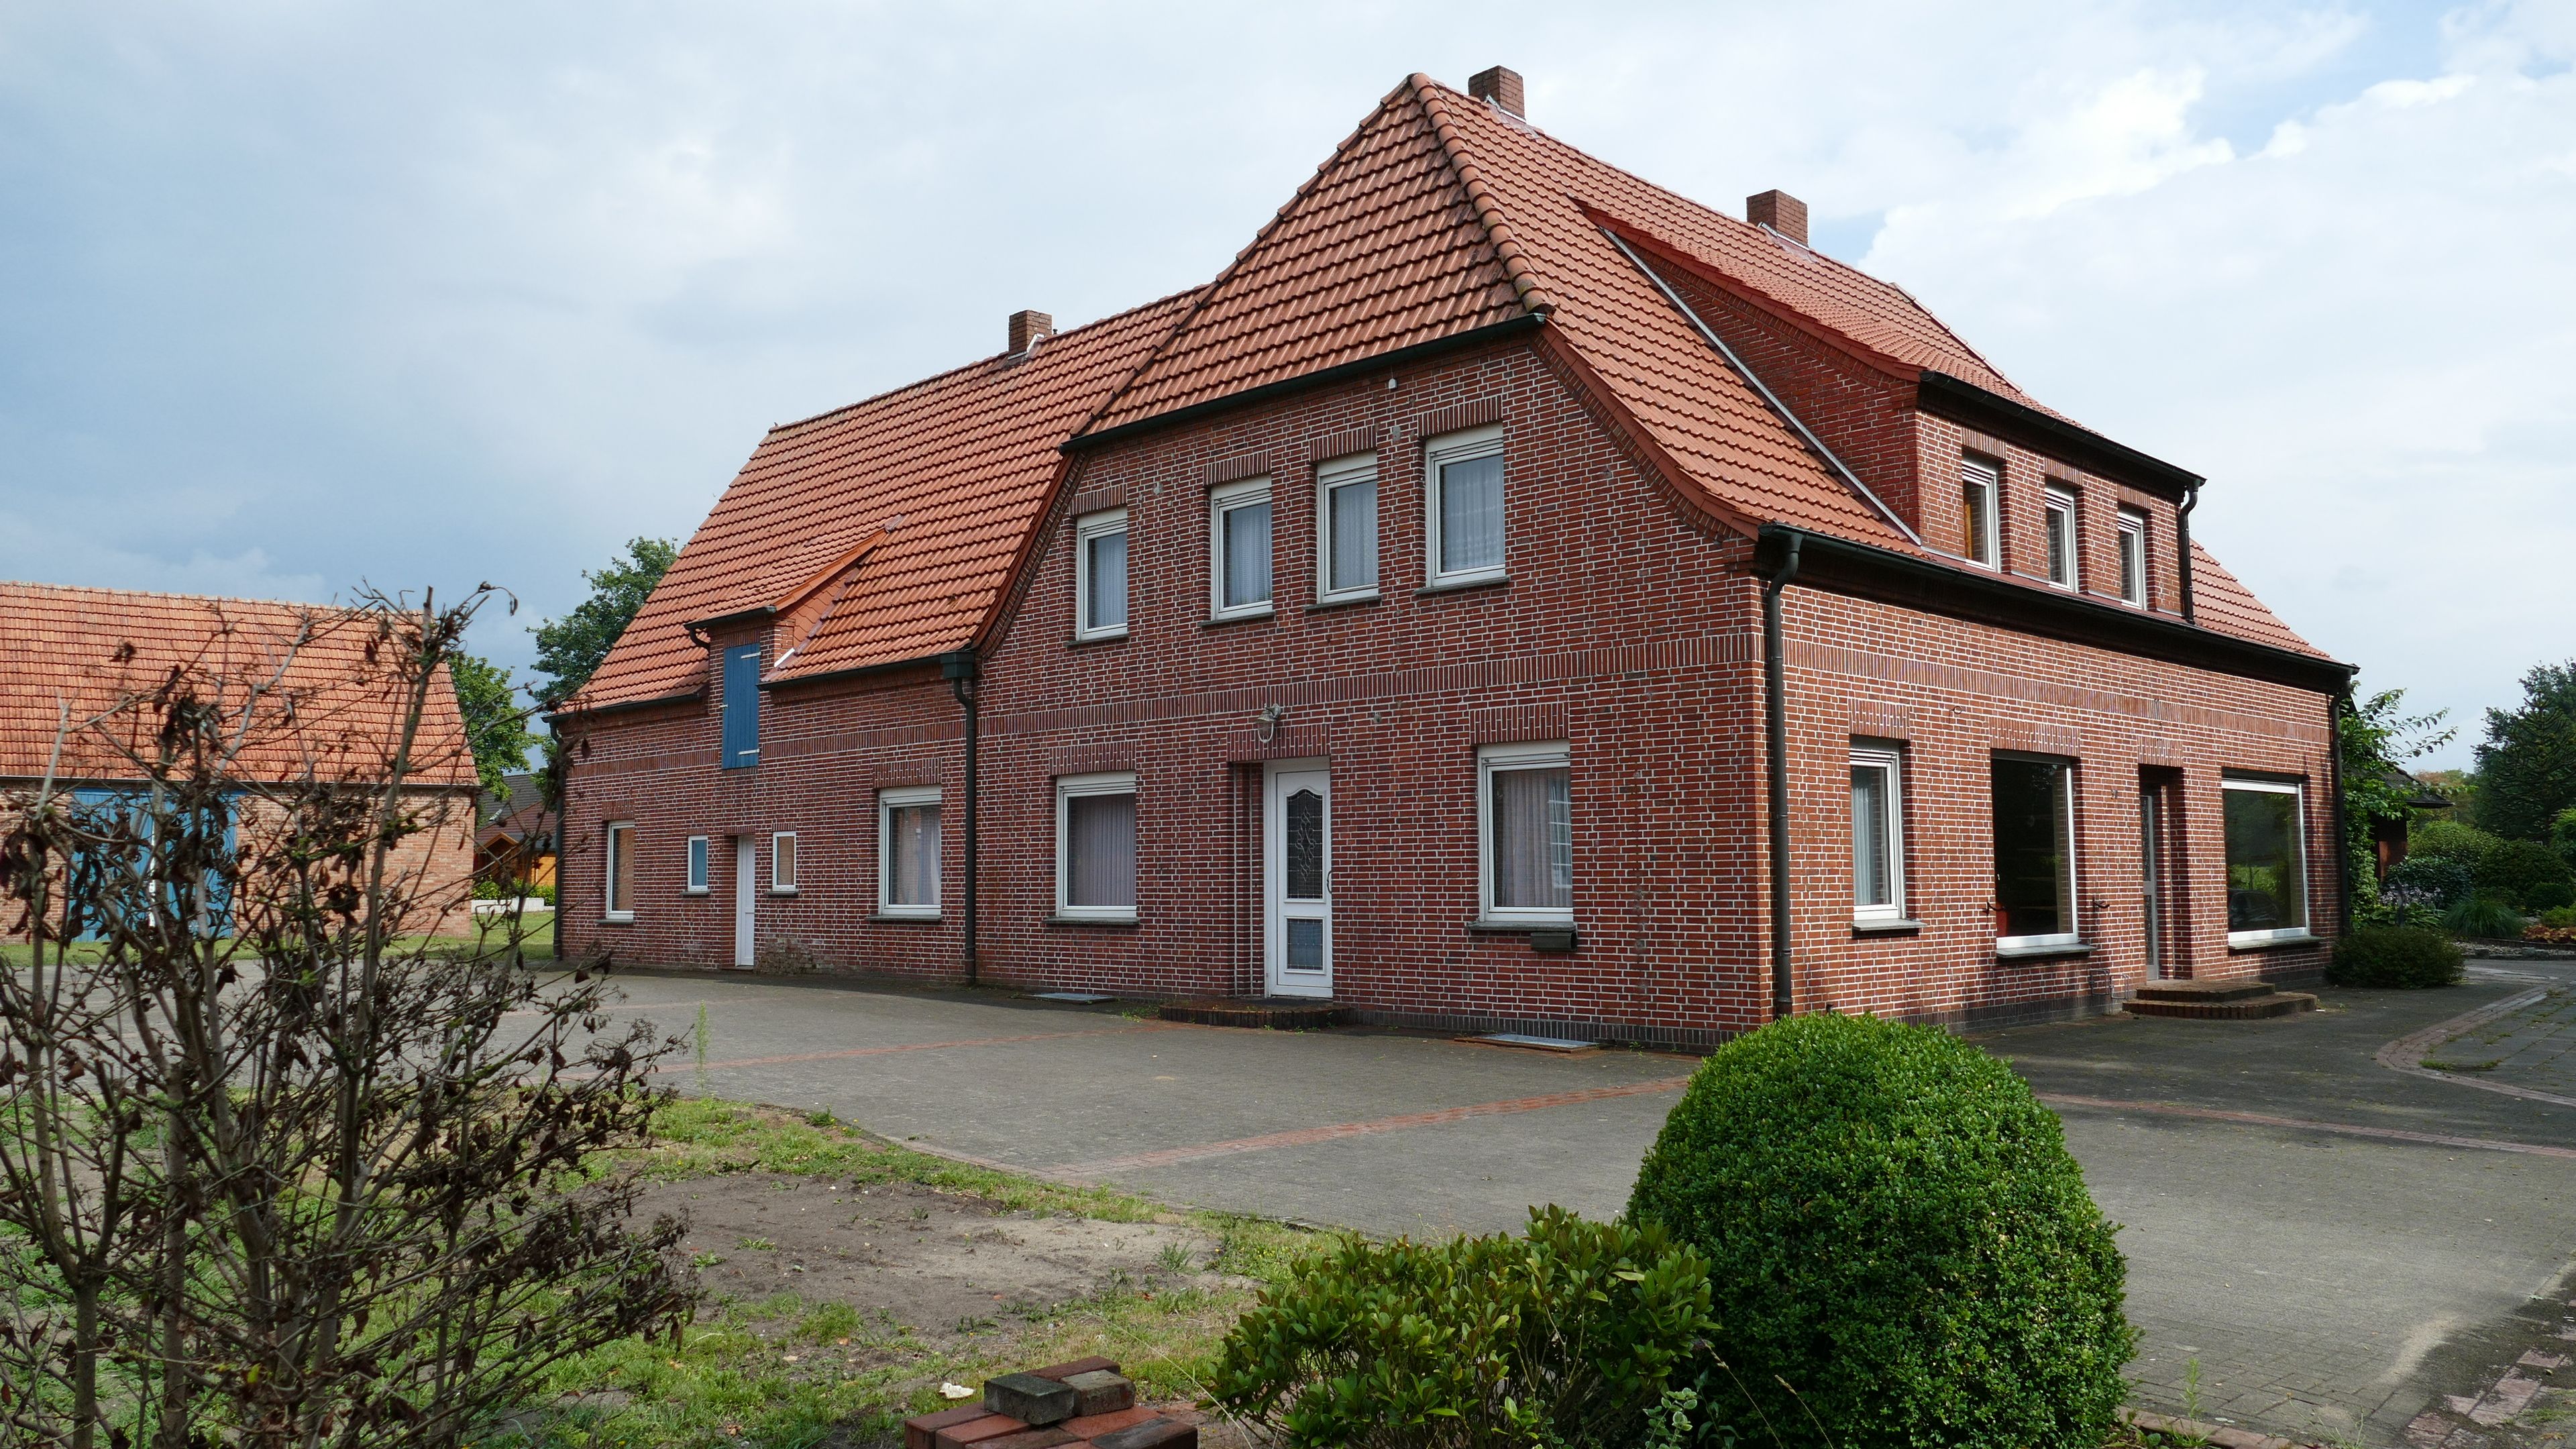 Konzeptarbeit weit fortgeschritten: Das alte "Haus Weß" in Markhausen soll zu einem Multifunktionshaus und Treffpunkt umgewandelt werden. Foto: Stix